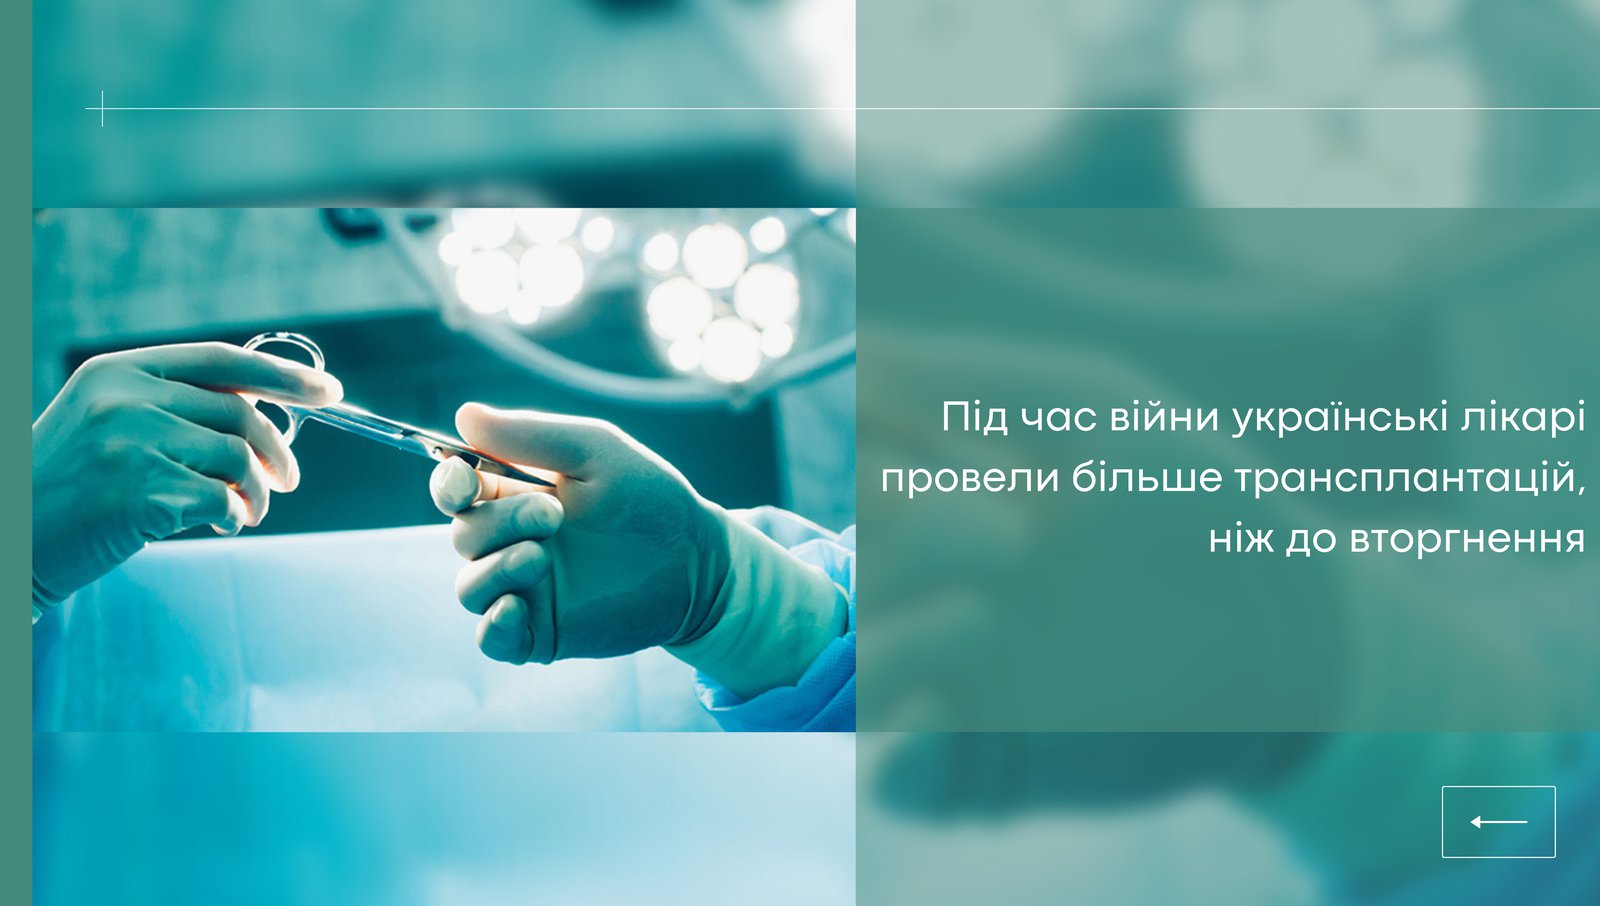 384 трансплантації органів провели українські лікарі у 2022 році, збільшивши кількість операцій на 20 % у порівнянні навіть із довоєнним 2021 роком